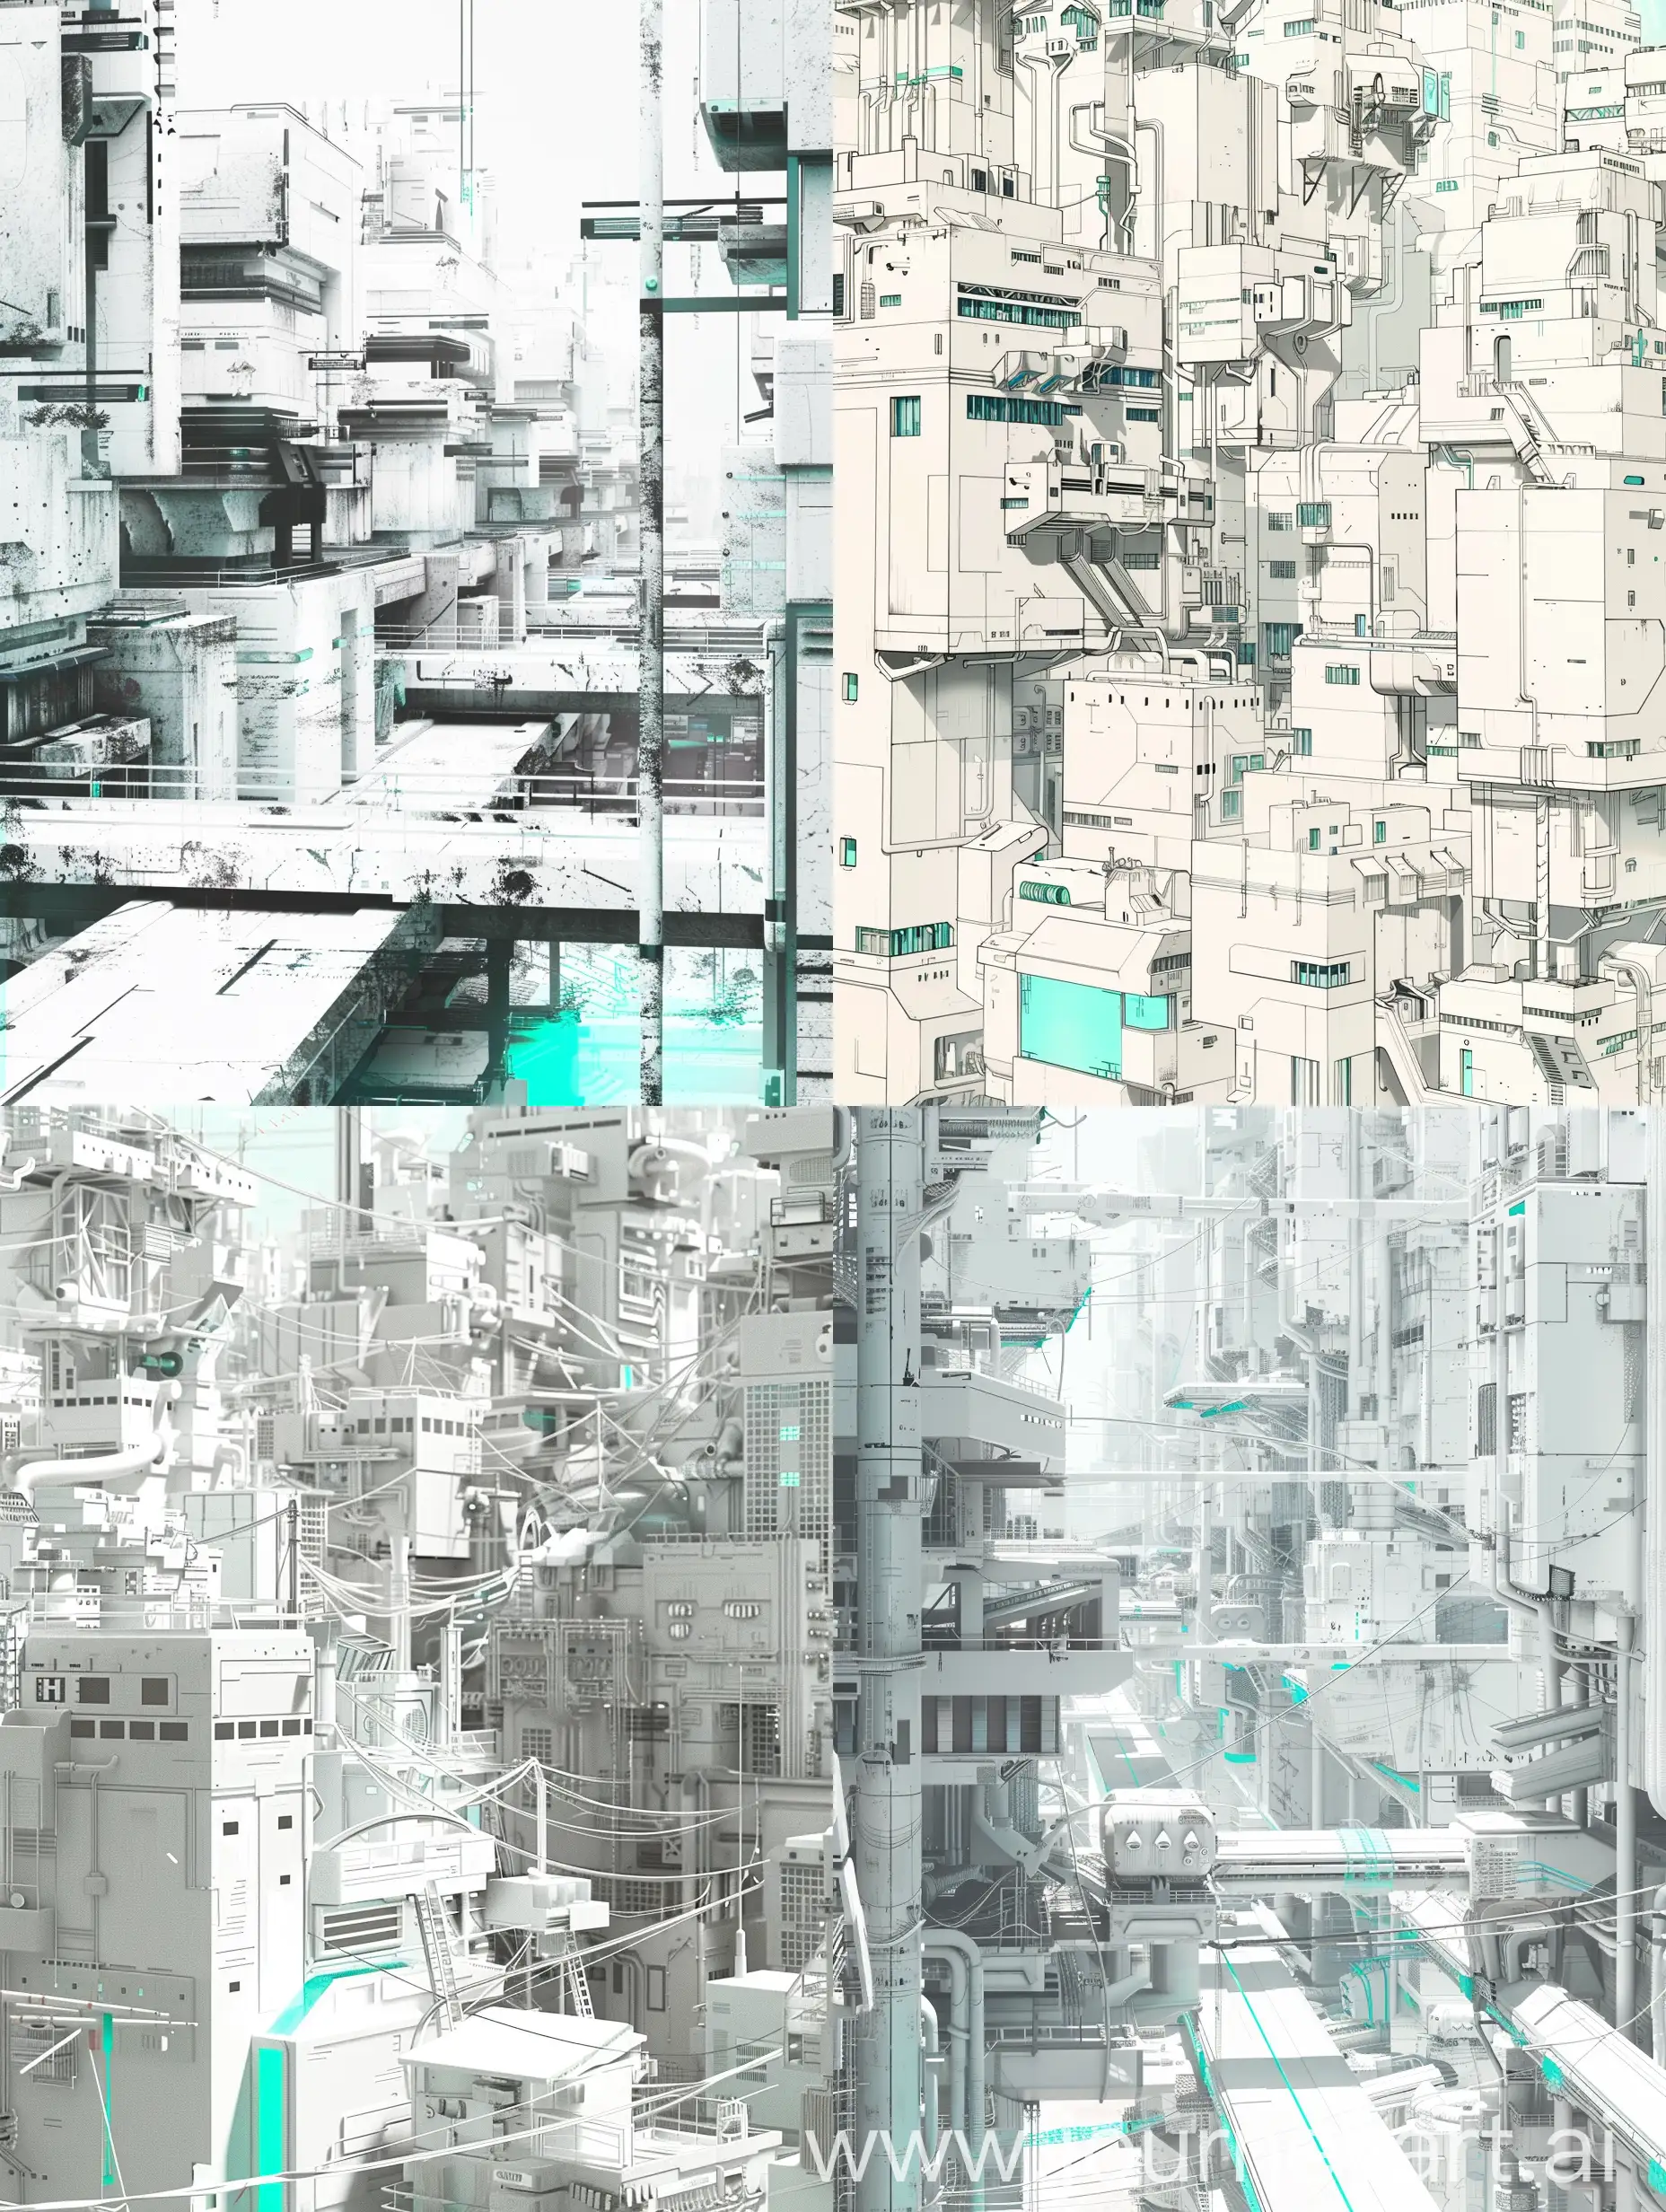 трущобы в стиле аниме киберпанк в бело серых тонах с горизонтальными помехами и немного бирюзового оттенка